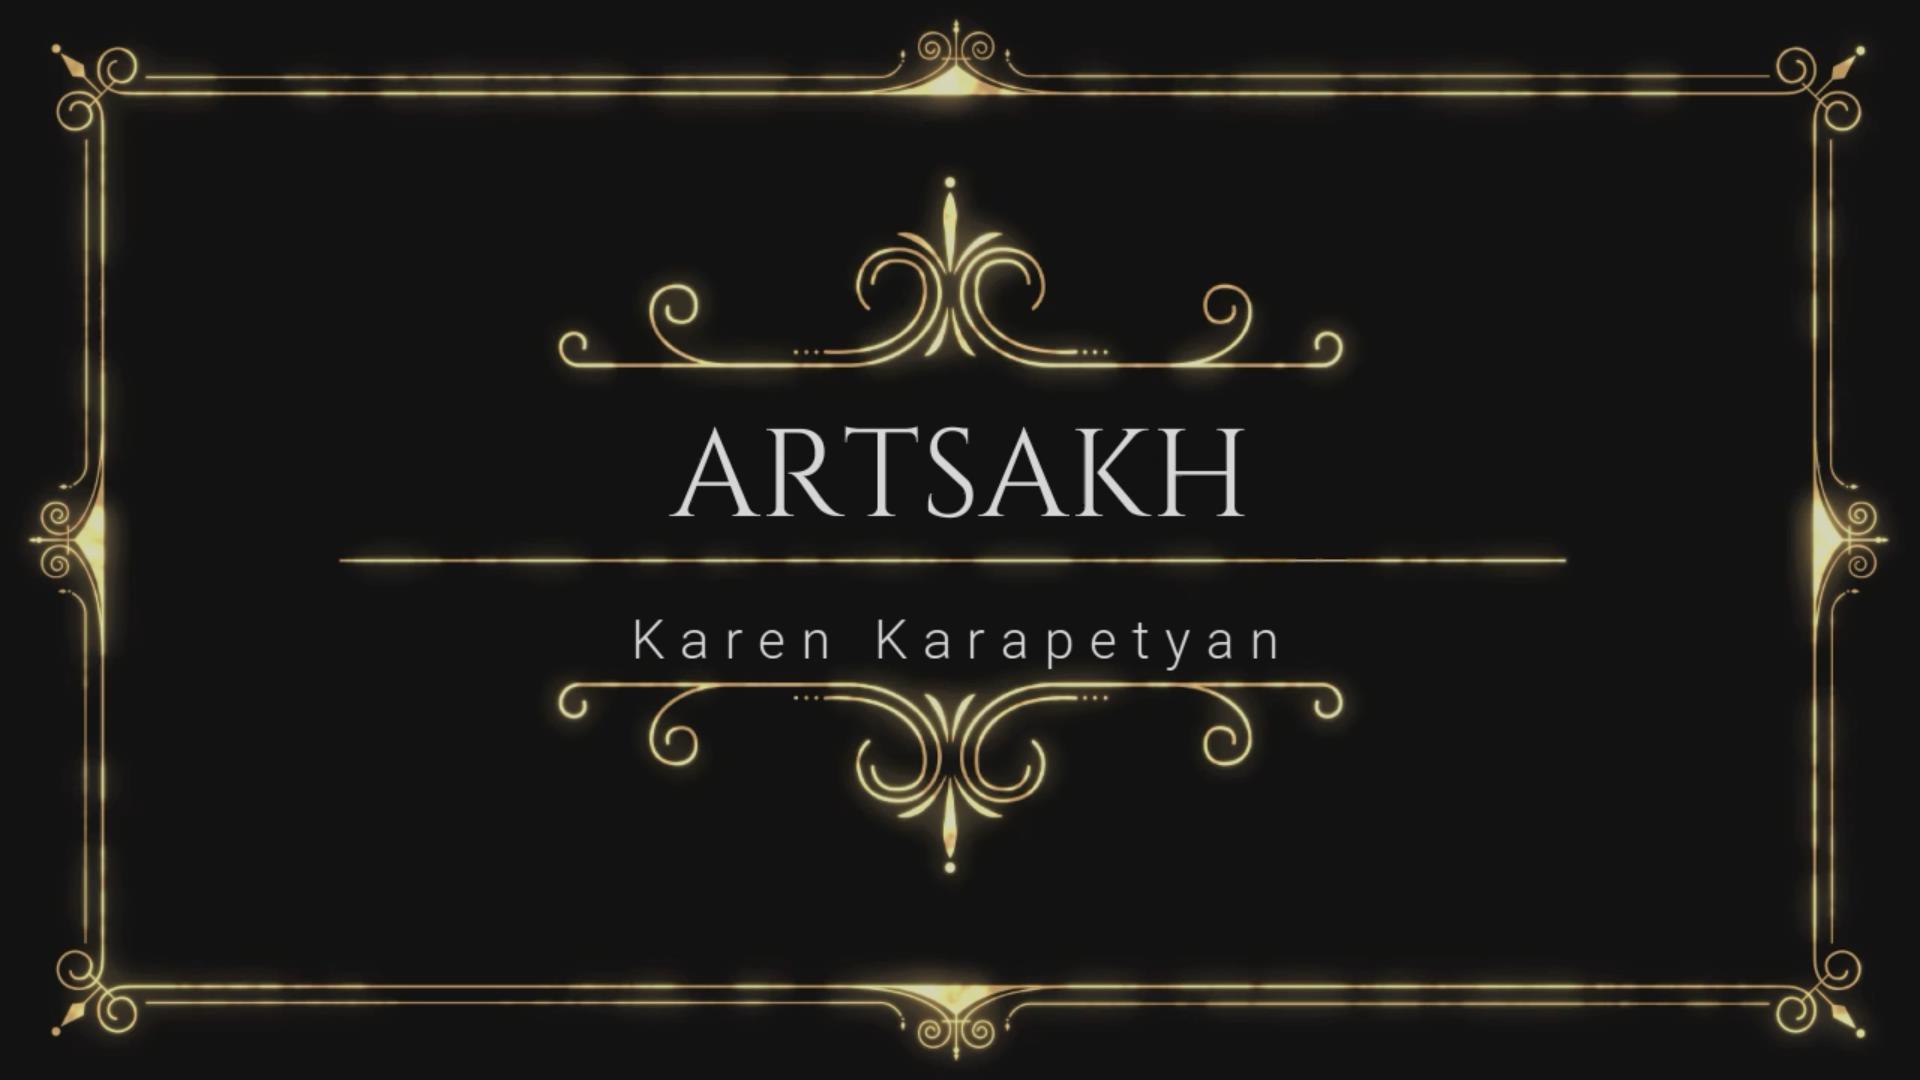 Karen Karapetyan - Artsakh / Արցախ / Арцах